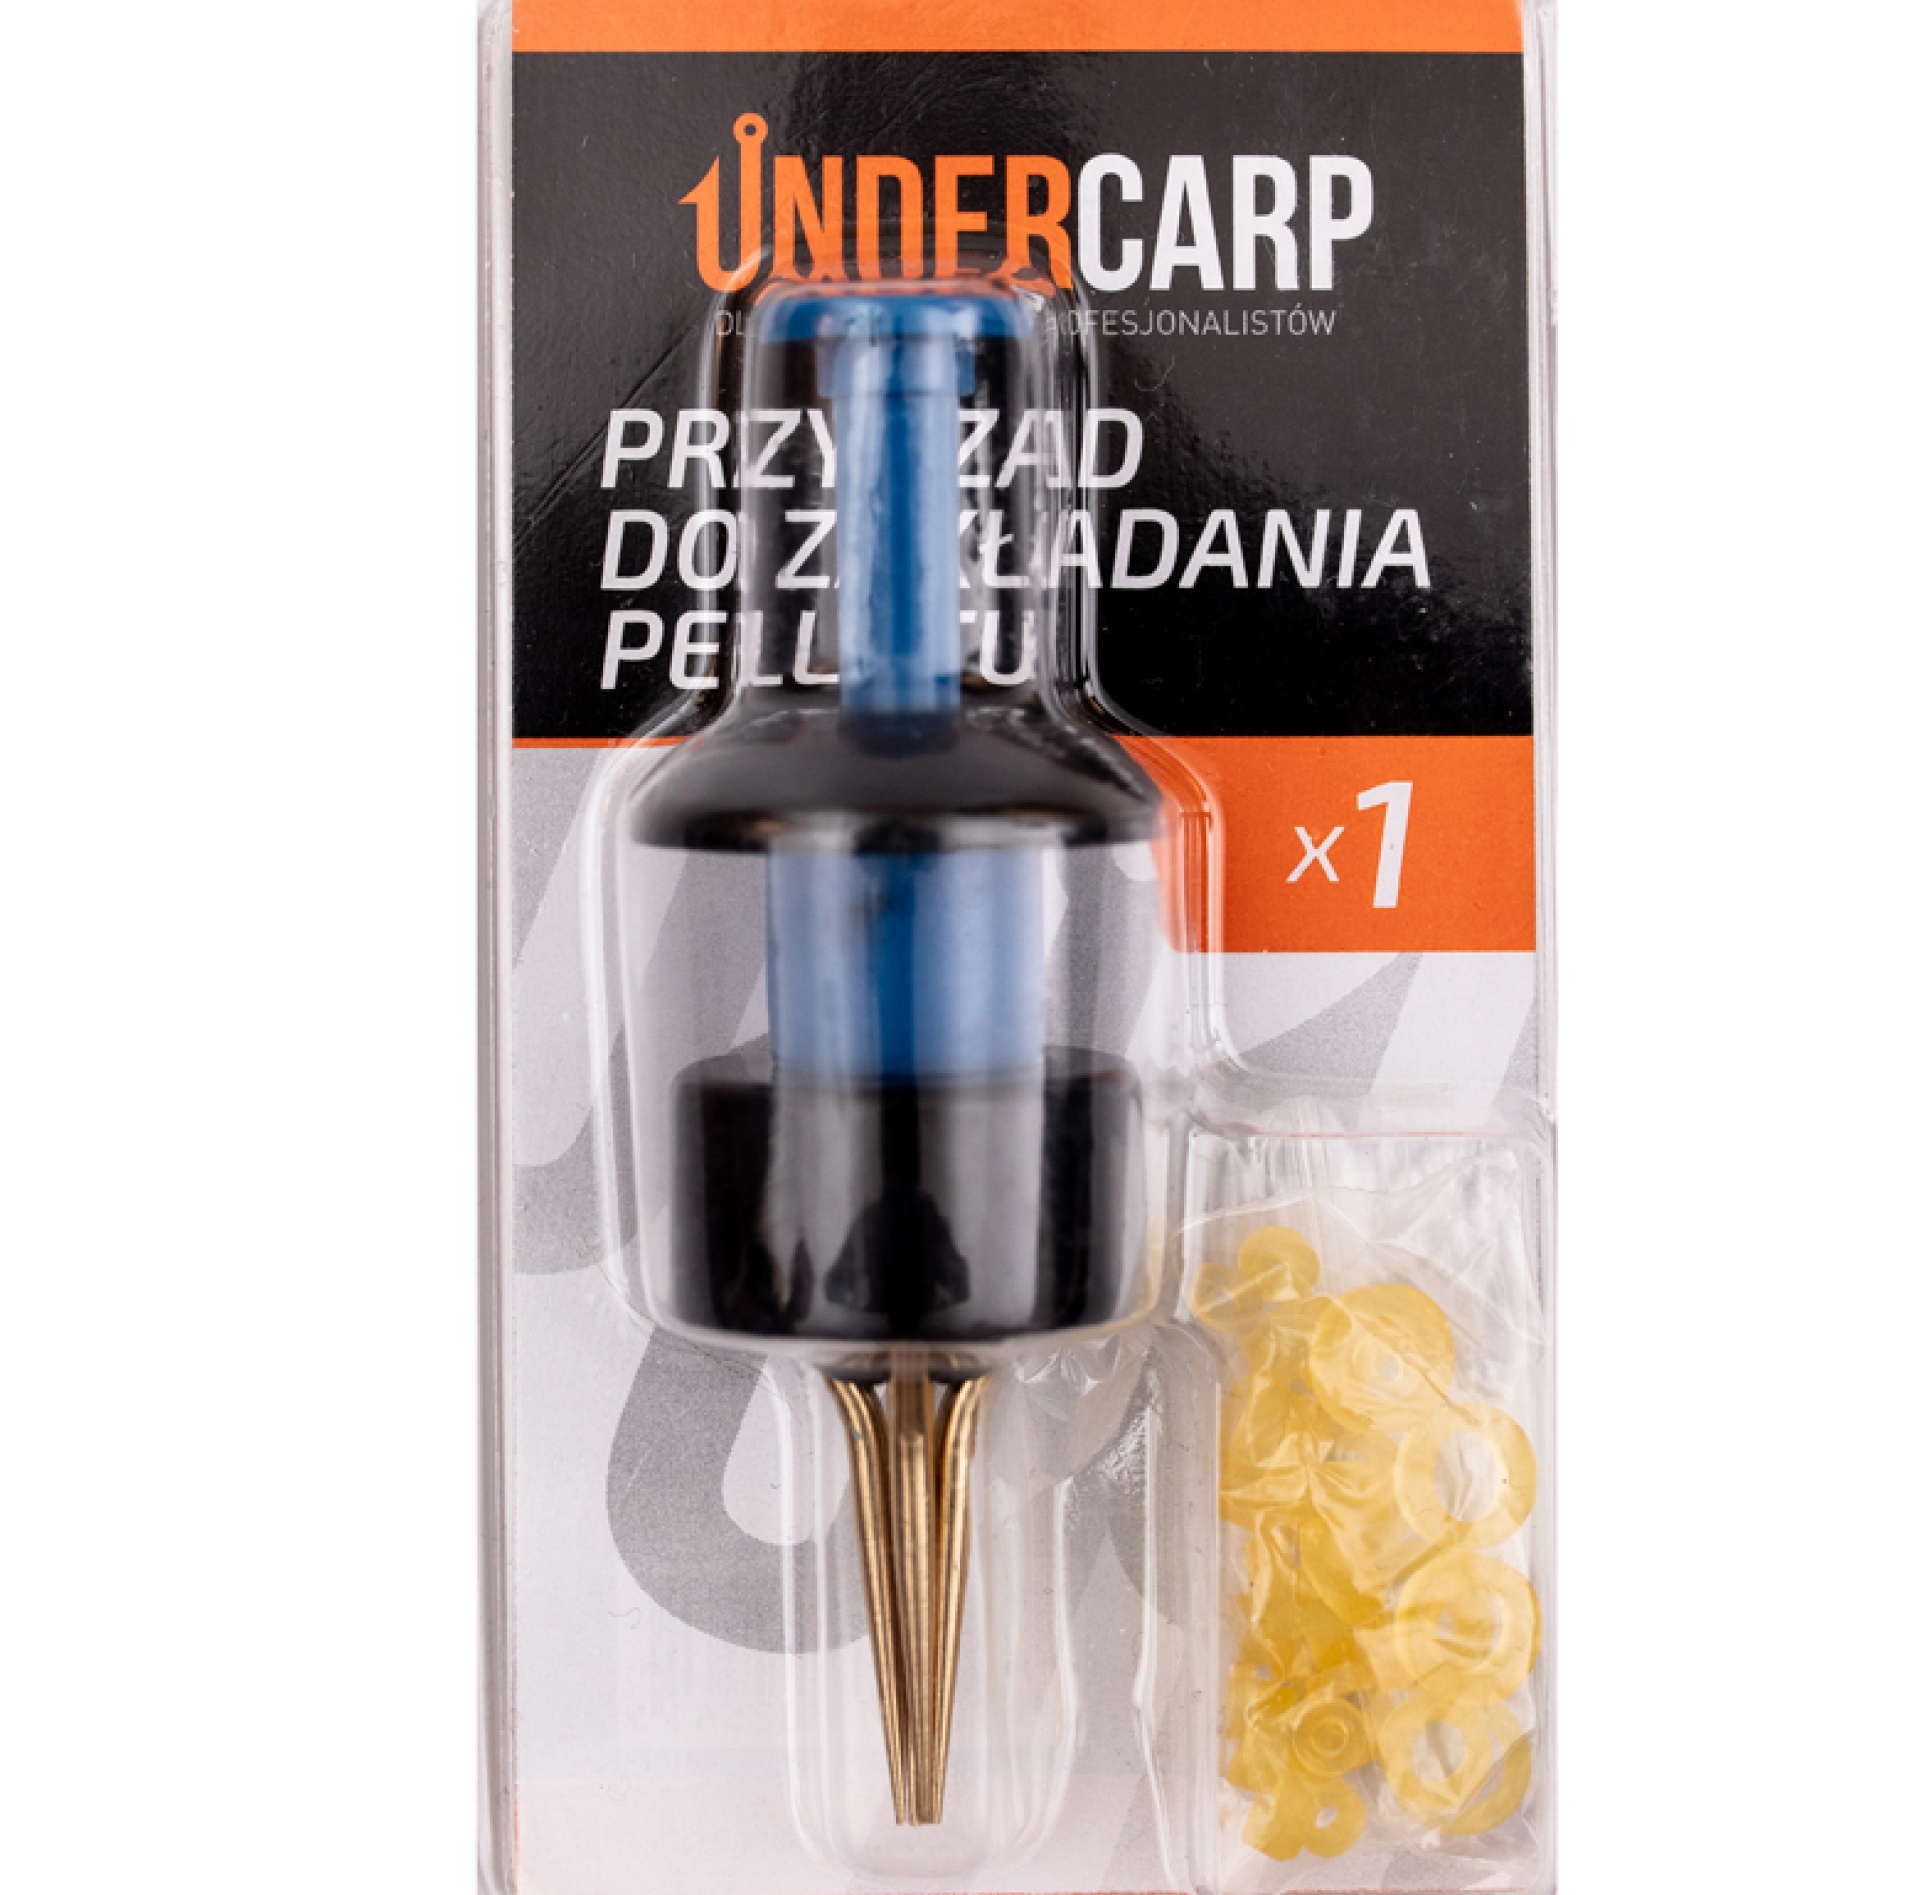 UnderCarp - Dispositivo para colocar pellets